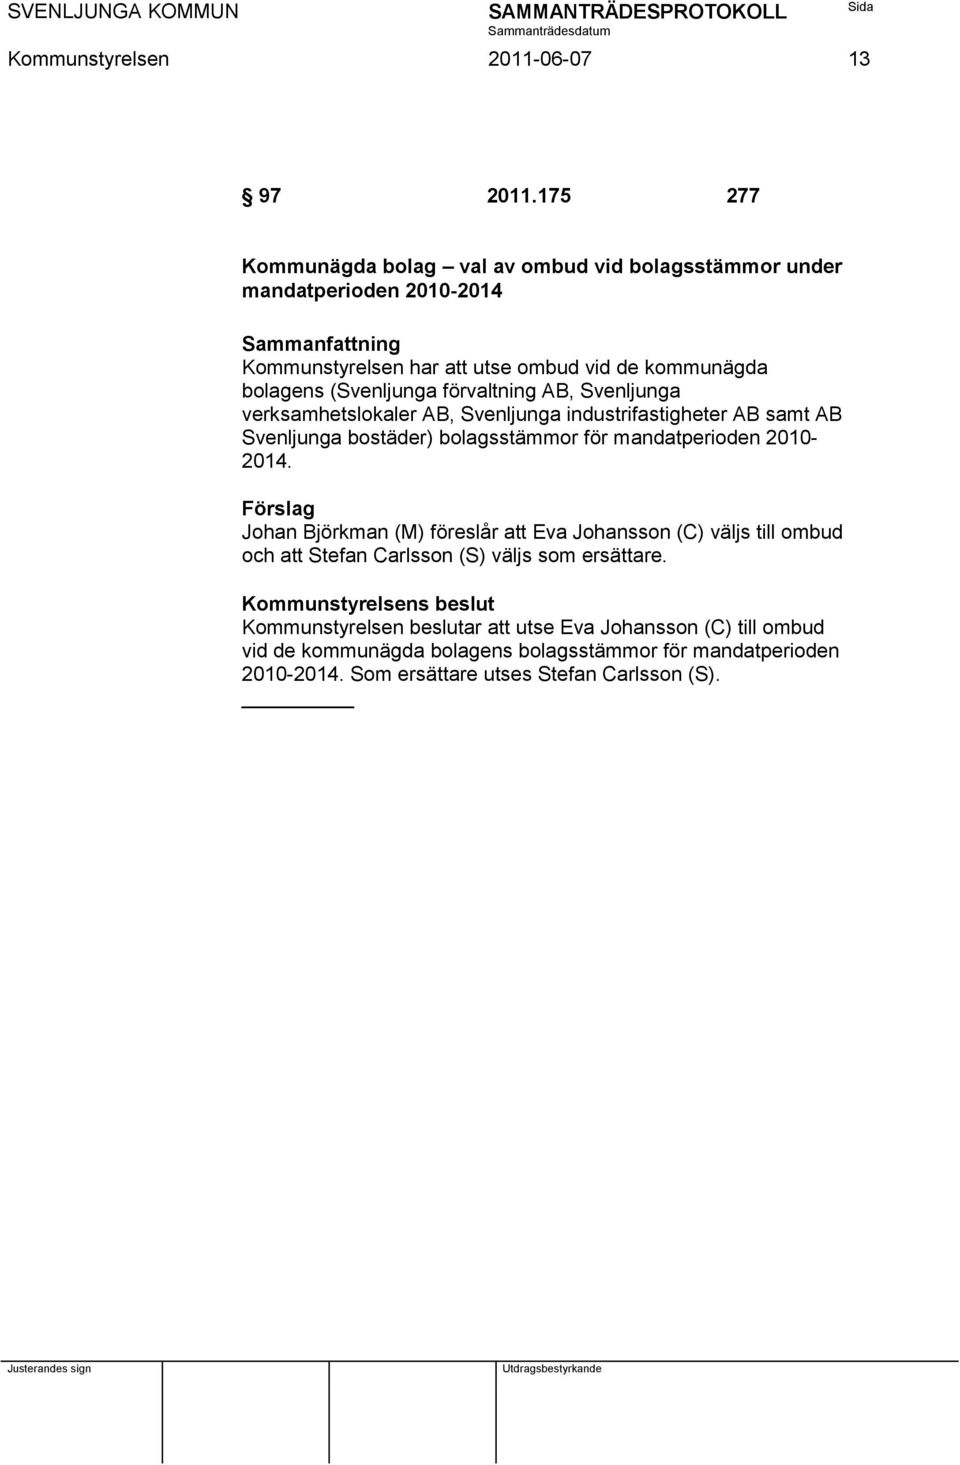 förvaltning AB, Svenljunga verksamhetslokaler AB, Svenljunga industrifastigheter AB samt AB Svenljunga bostäder) bolagsstämmor för mandatperioden 2010-2014.